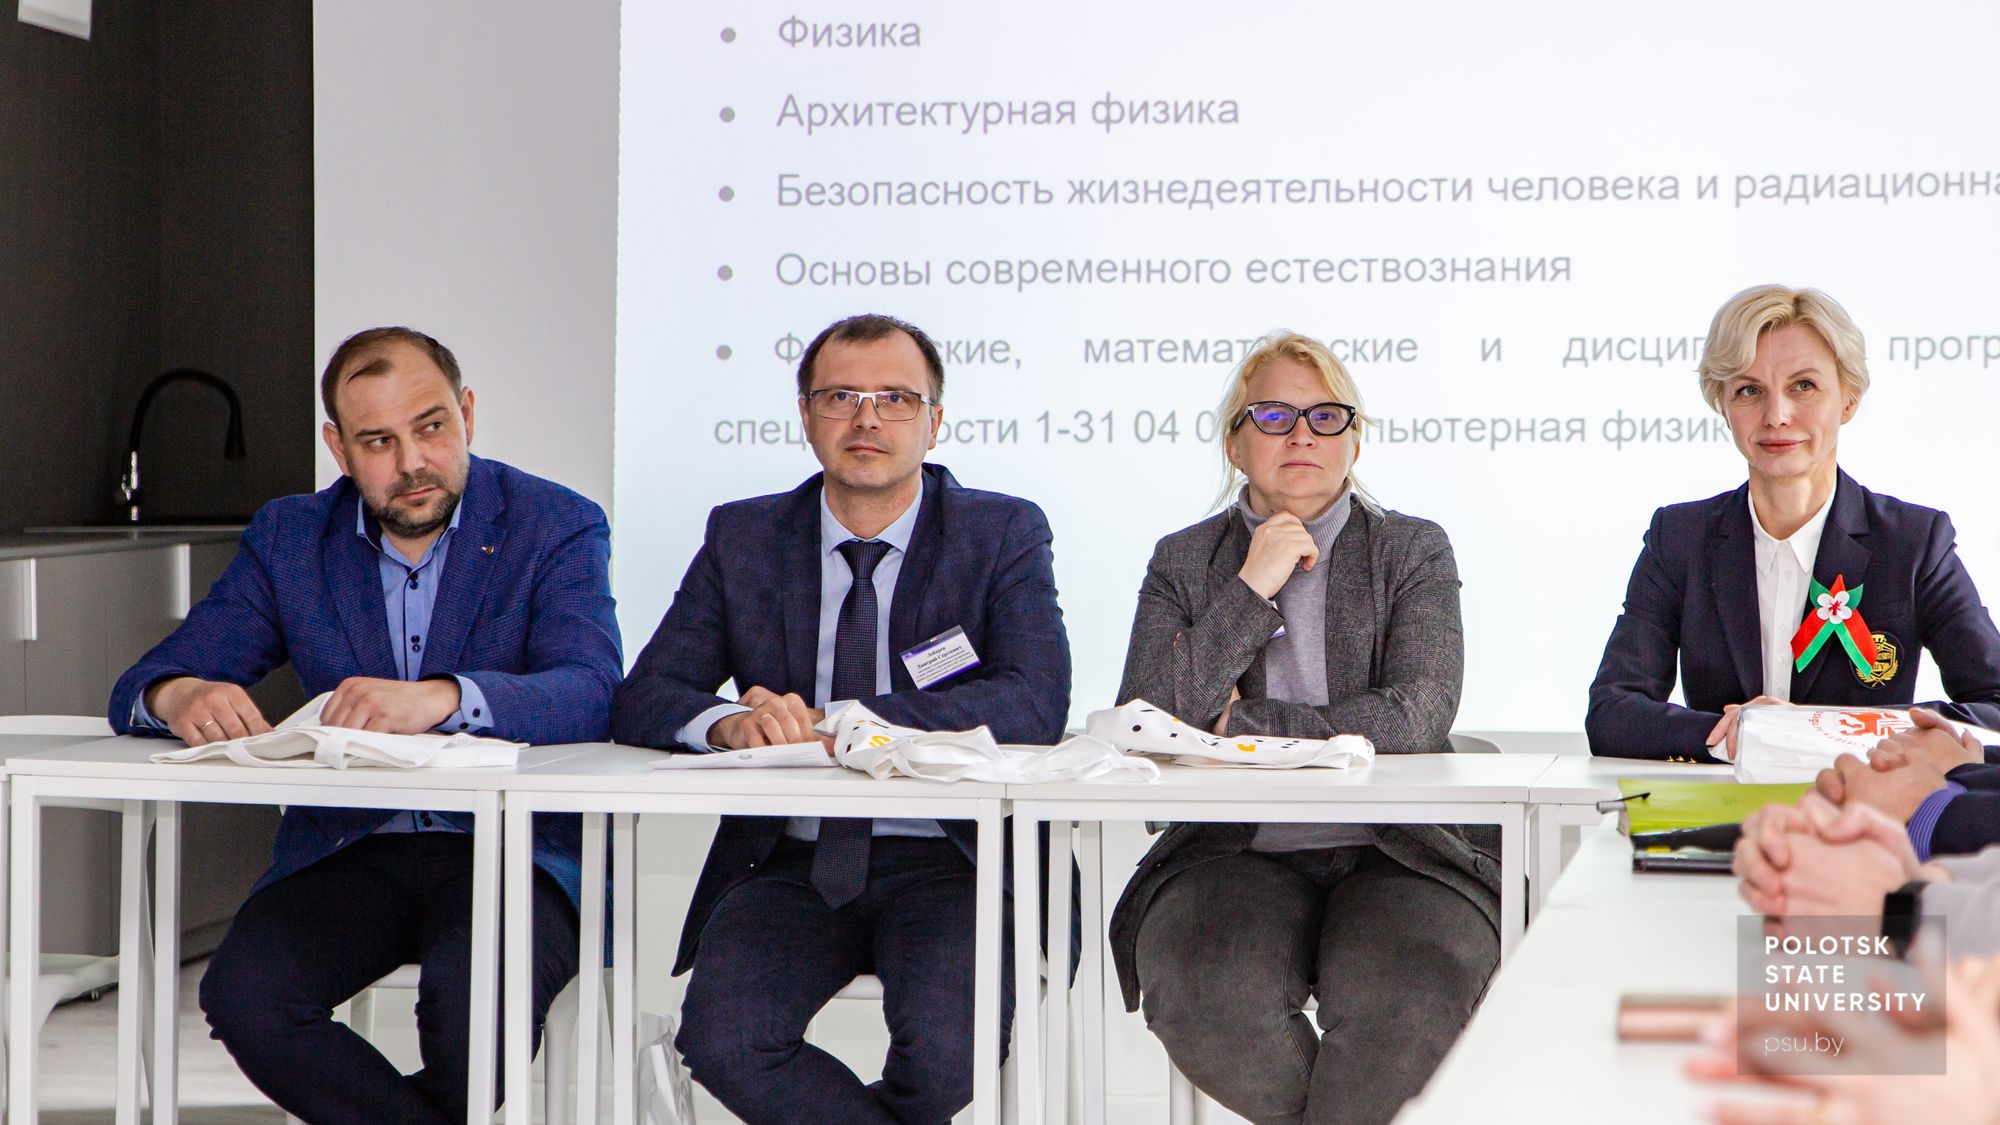 Встреча представителей Псковского университета с руководством и преподавателями Полоцкого университета